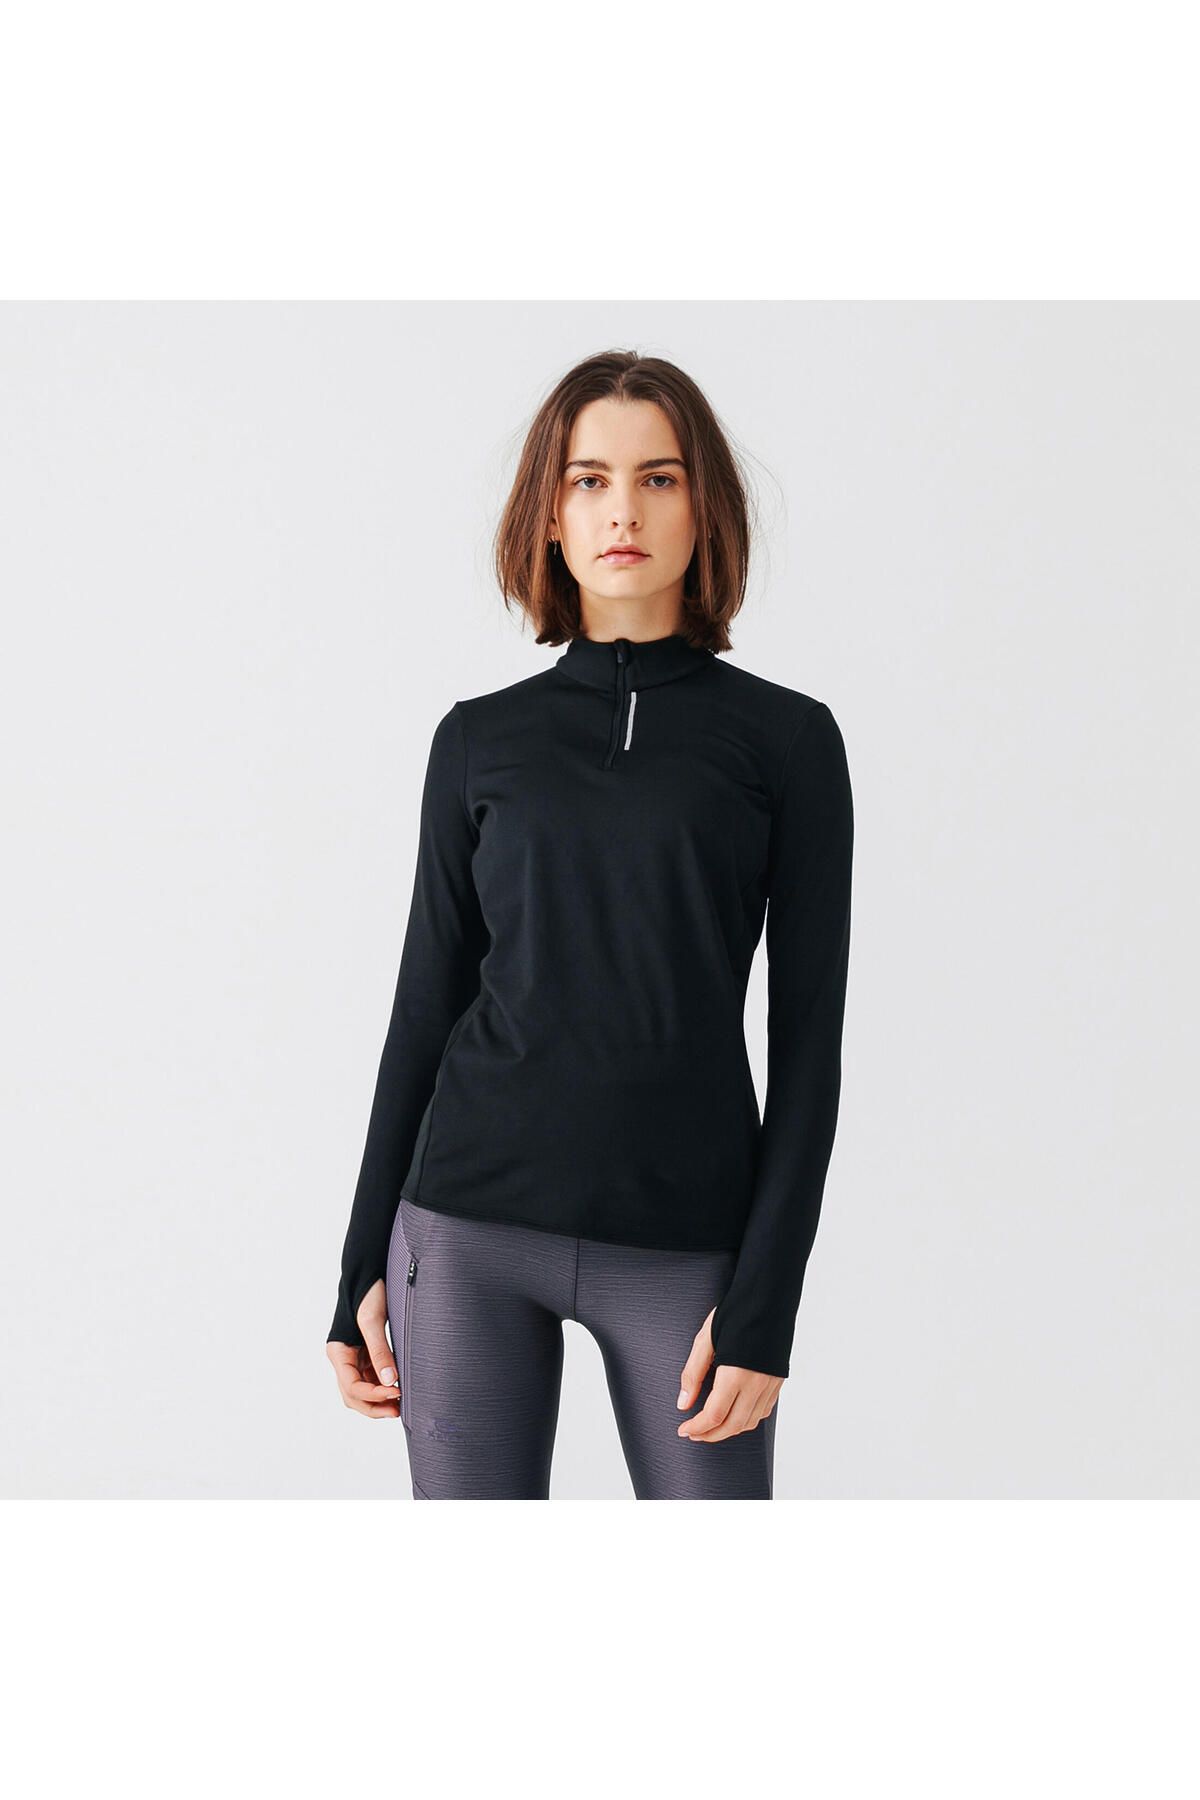 Decathlon Kadın Uzun Kollu Koşu Tişörtü - Siyah - Warm